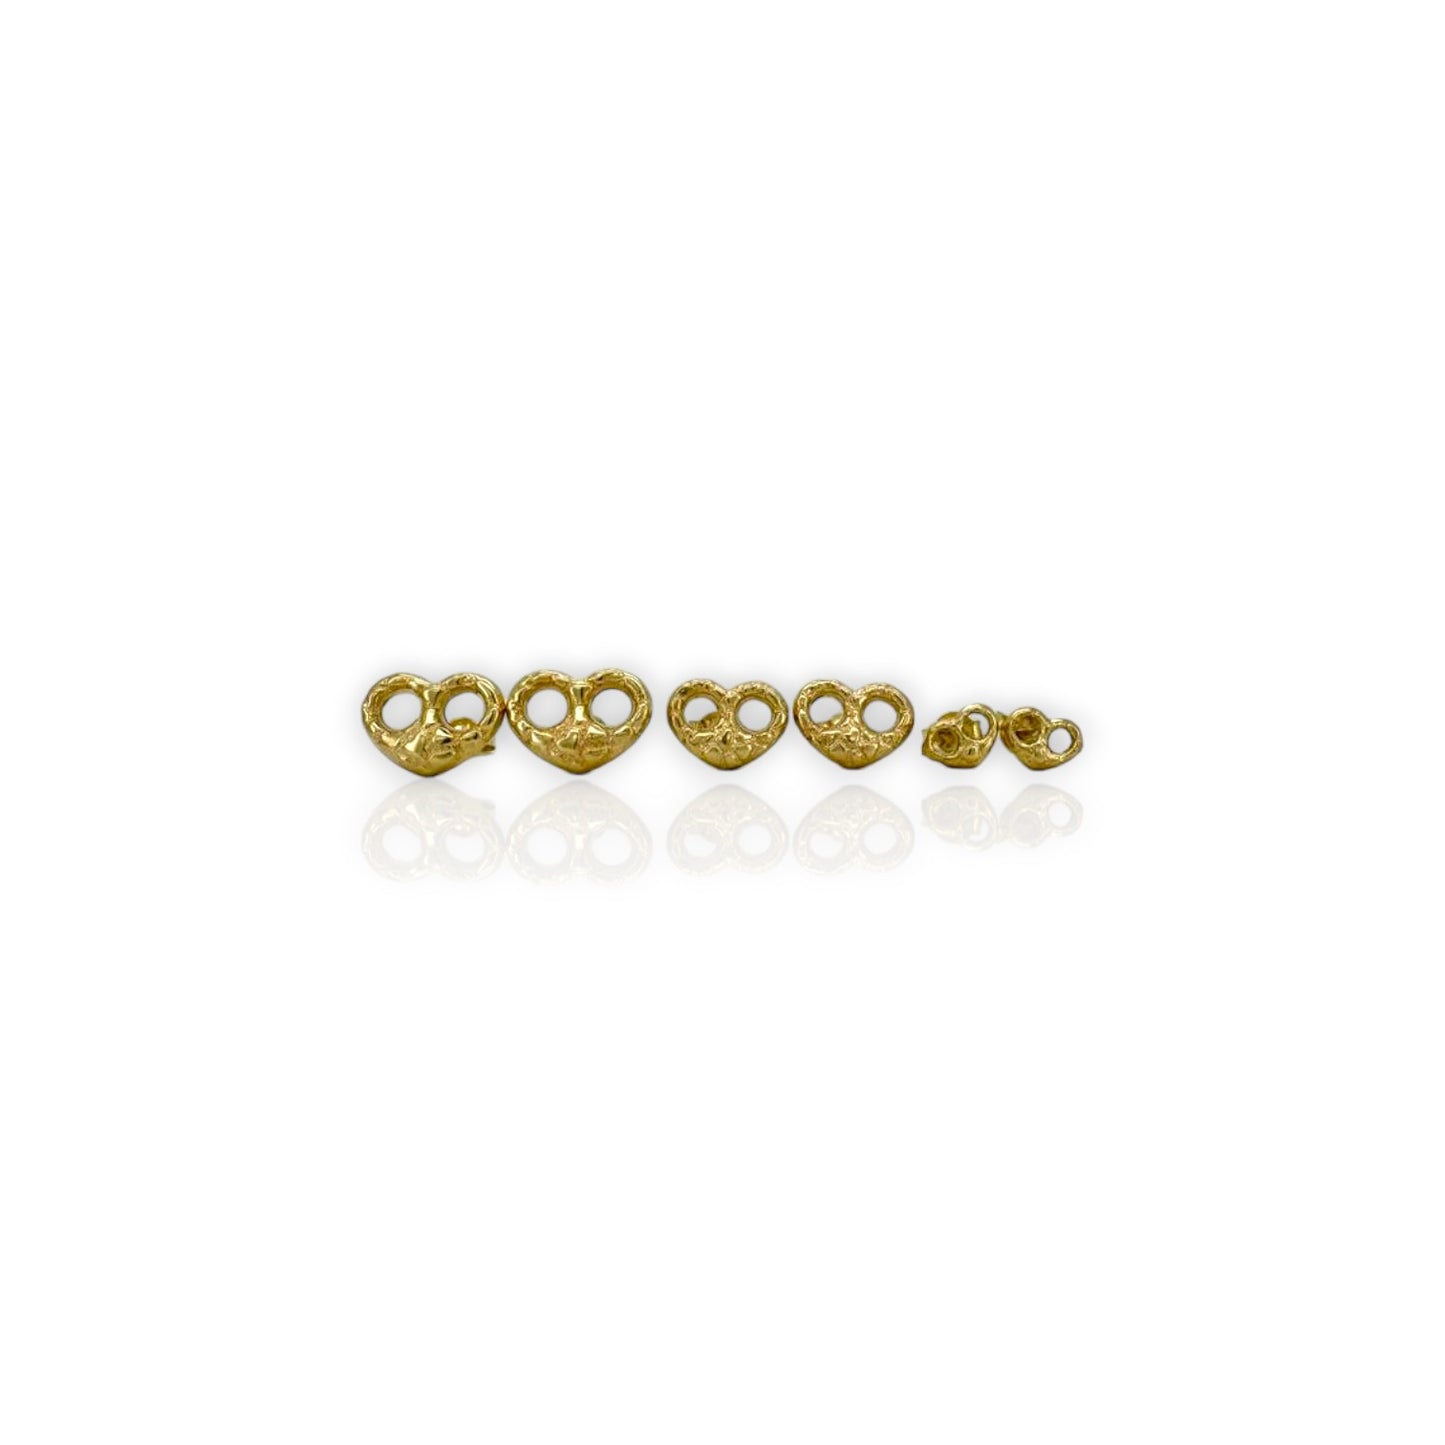 Heart Earrings - 10K Yellow Gold